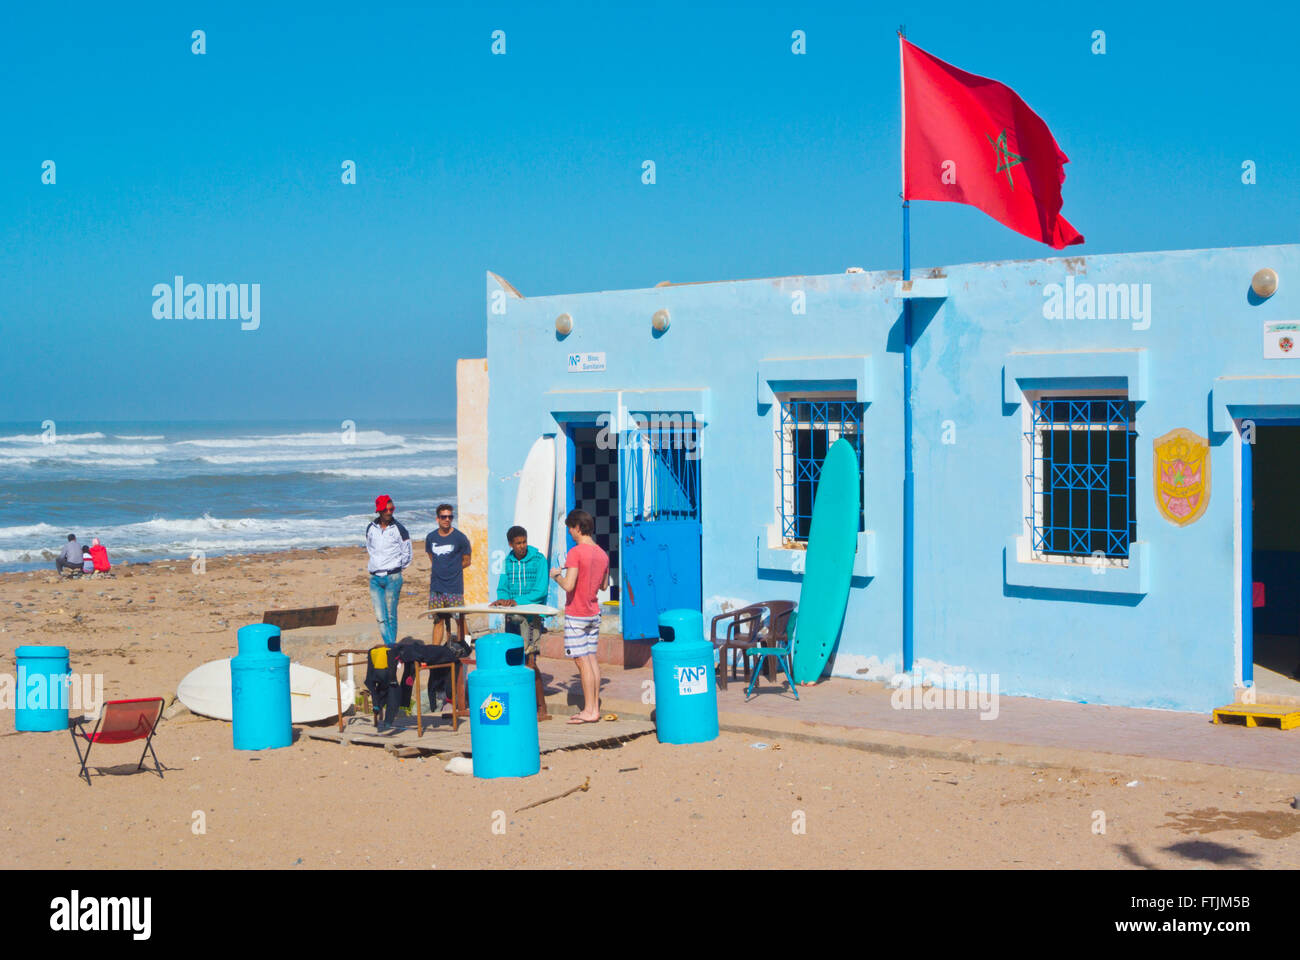 Surf Shop, Plage, Sidi Ifni, Guelmim-Oued, région du sud du Maroc, l'Afrique du Nord Banque D'Images